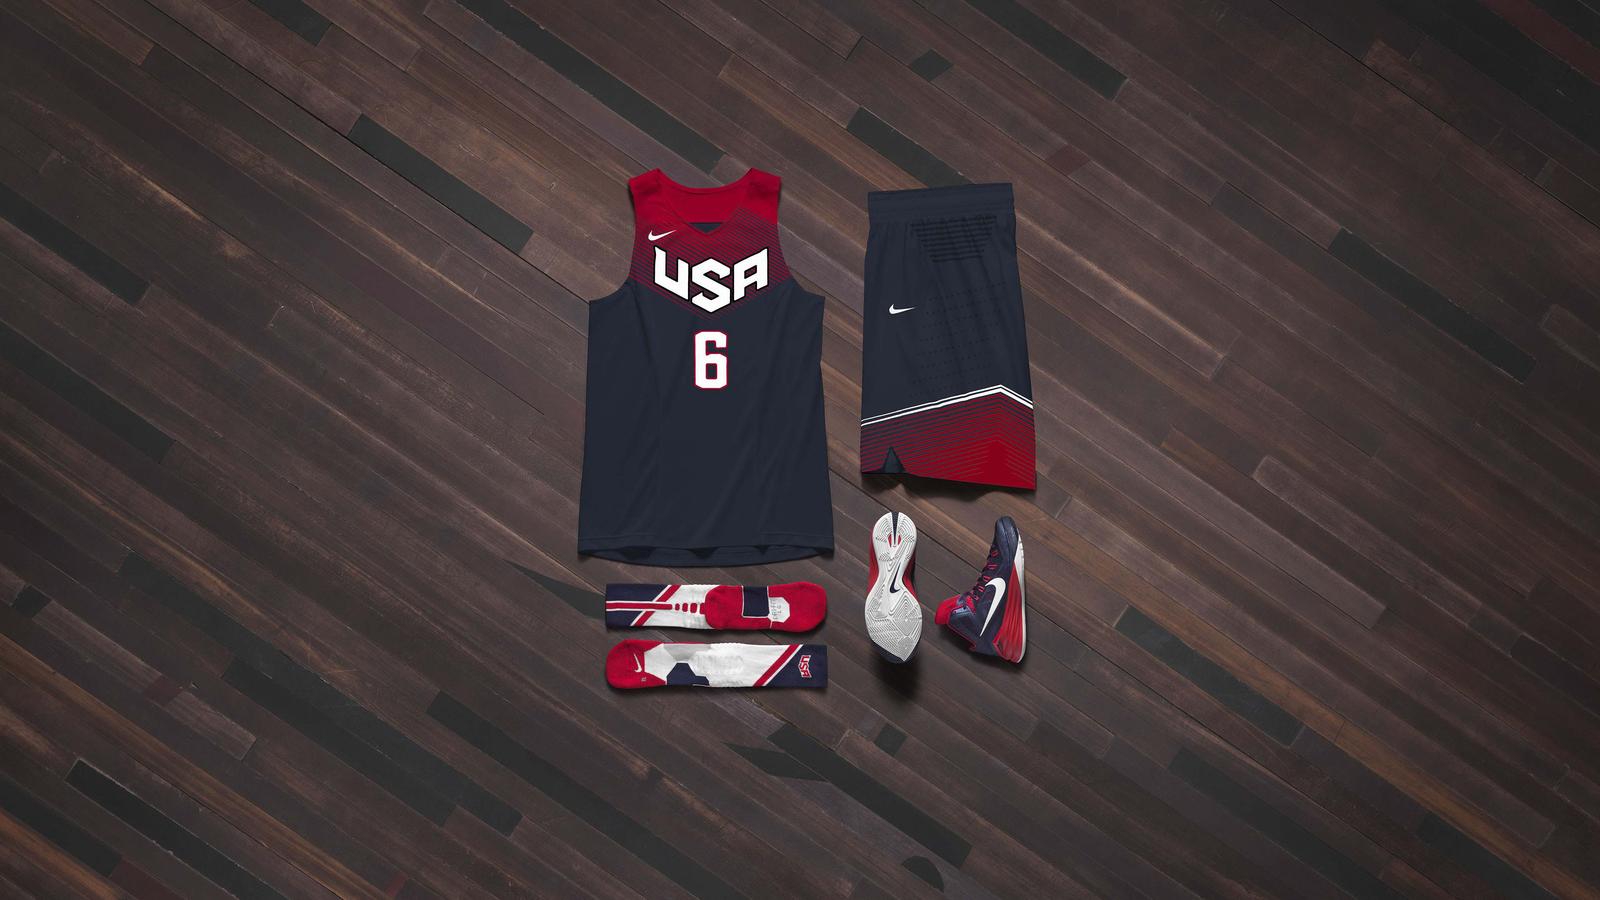 Nike Basketball Unveils USA Basketball Uniform